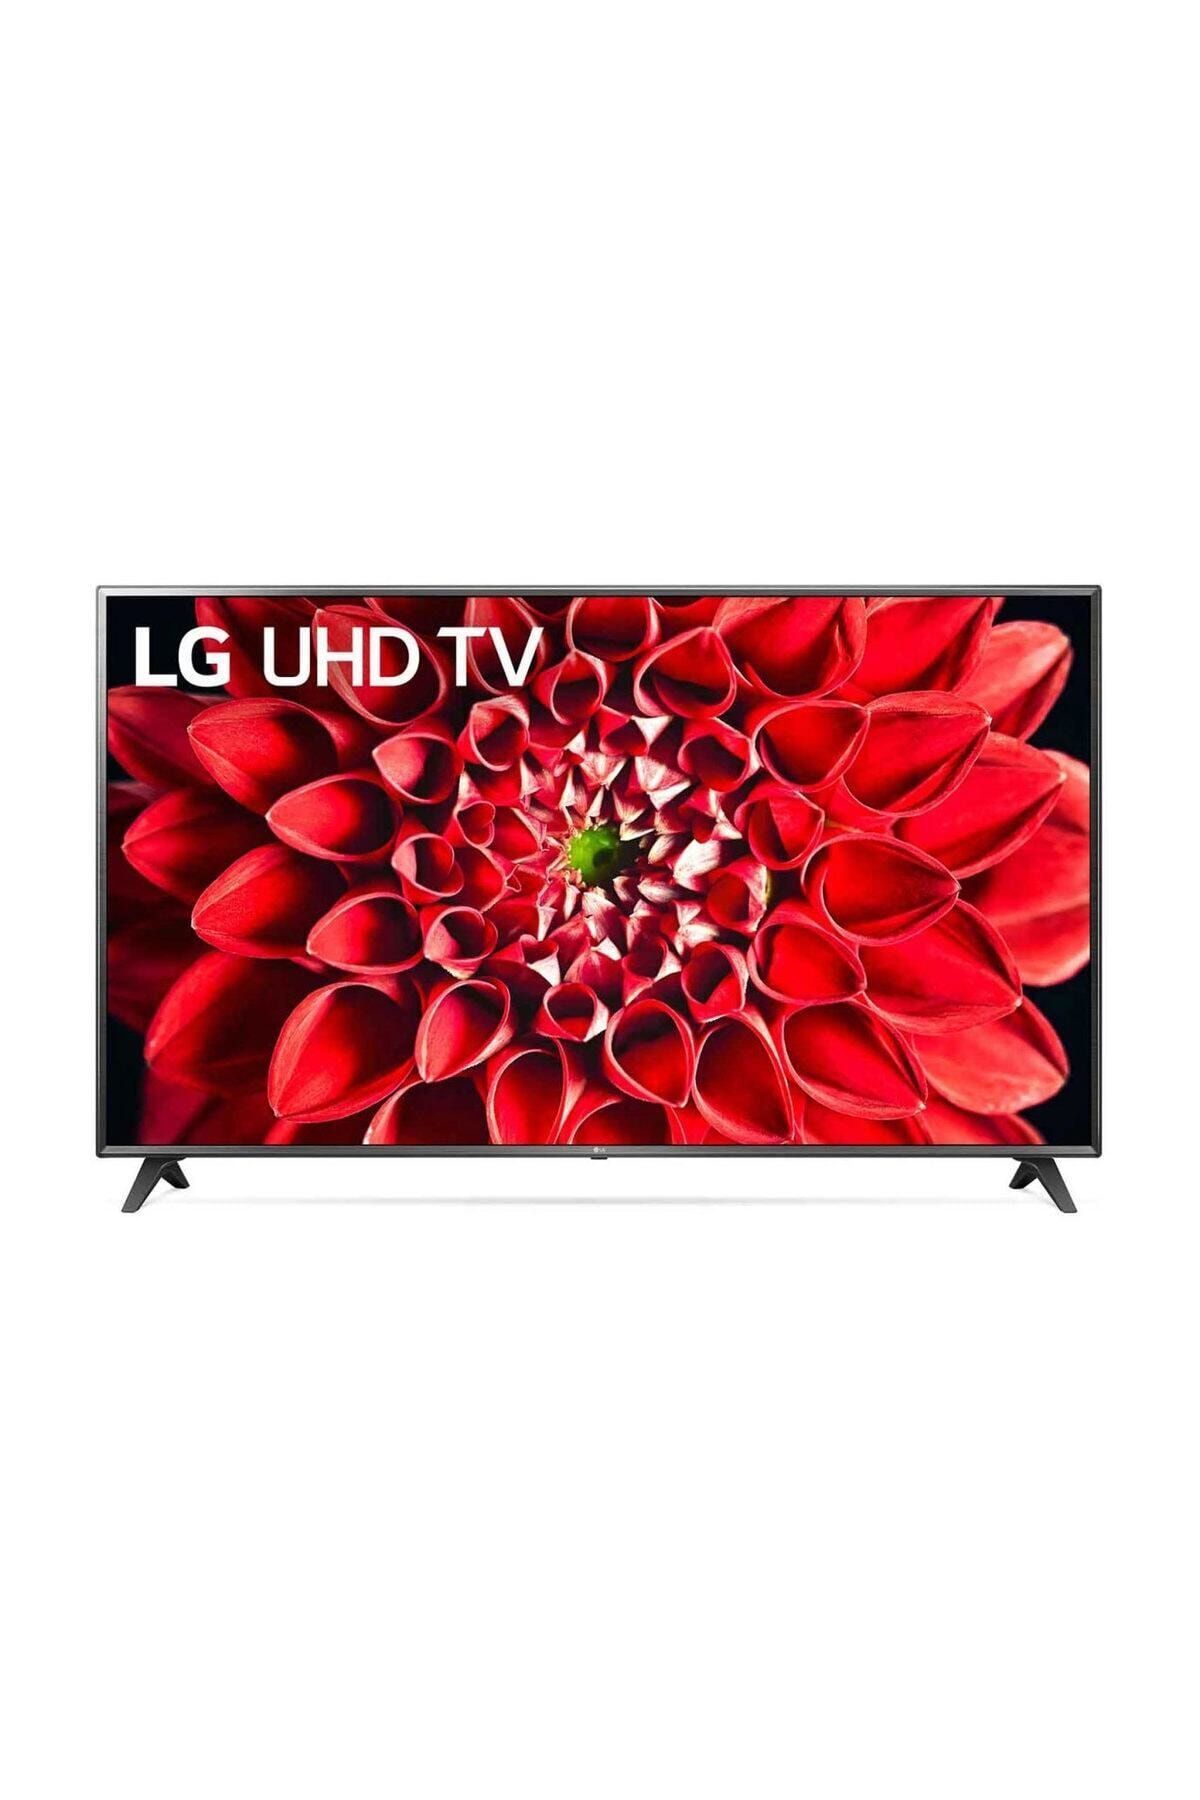 LG 49UN71006 49" 124 Ekran Uydu Alıcılı 4K Ultra HD Smart LED TV